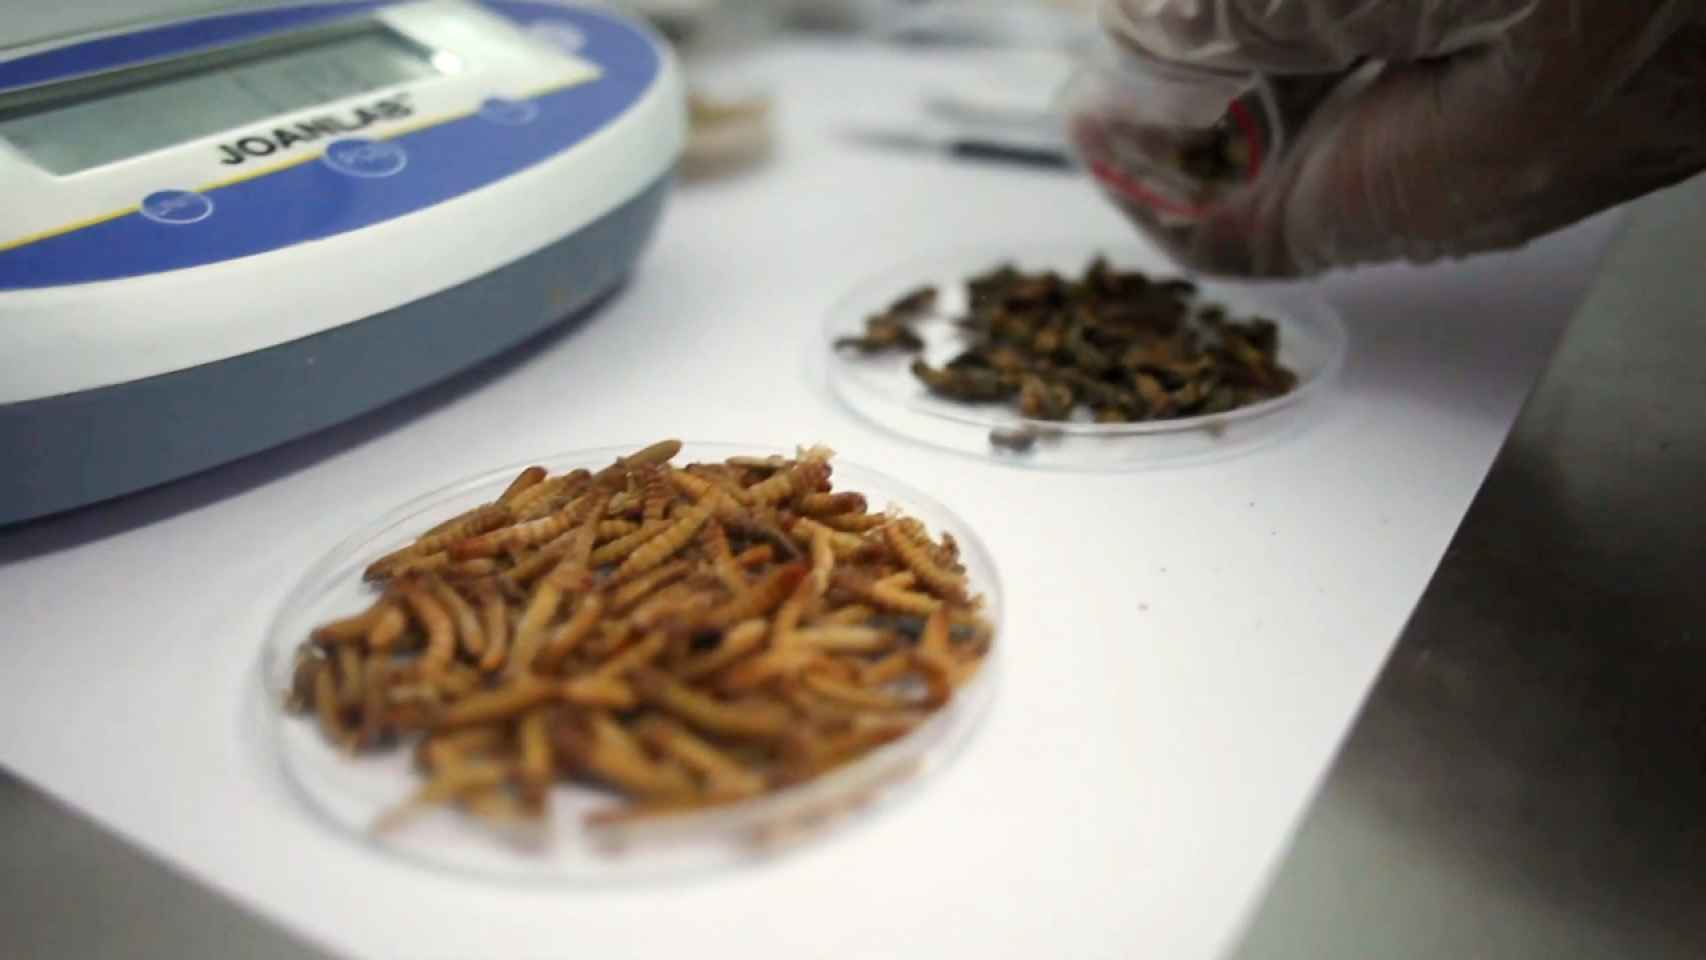 Uno de los desarrollos alimenticios de Insekt Label Biotech. Foto: Insekt Label Biotech.